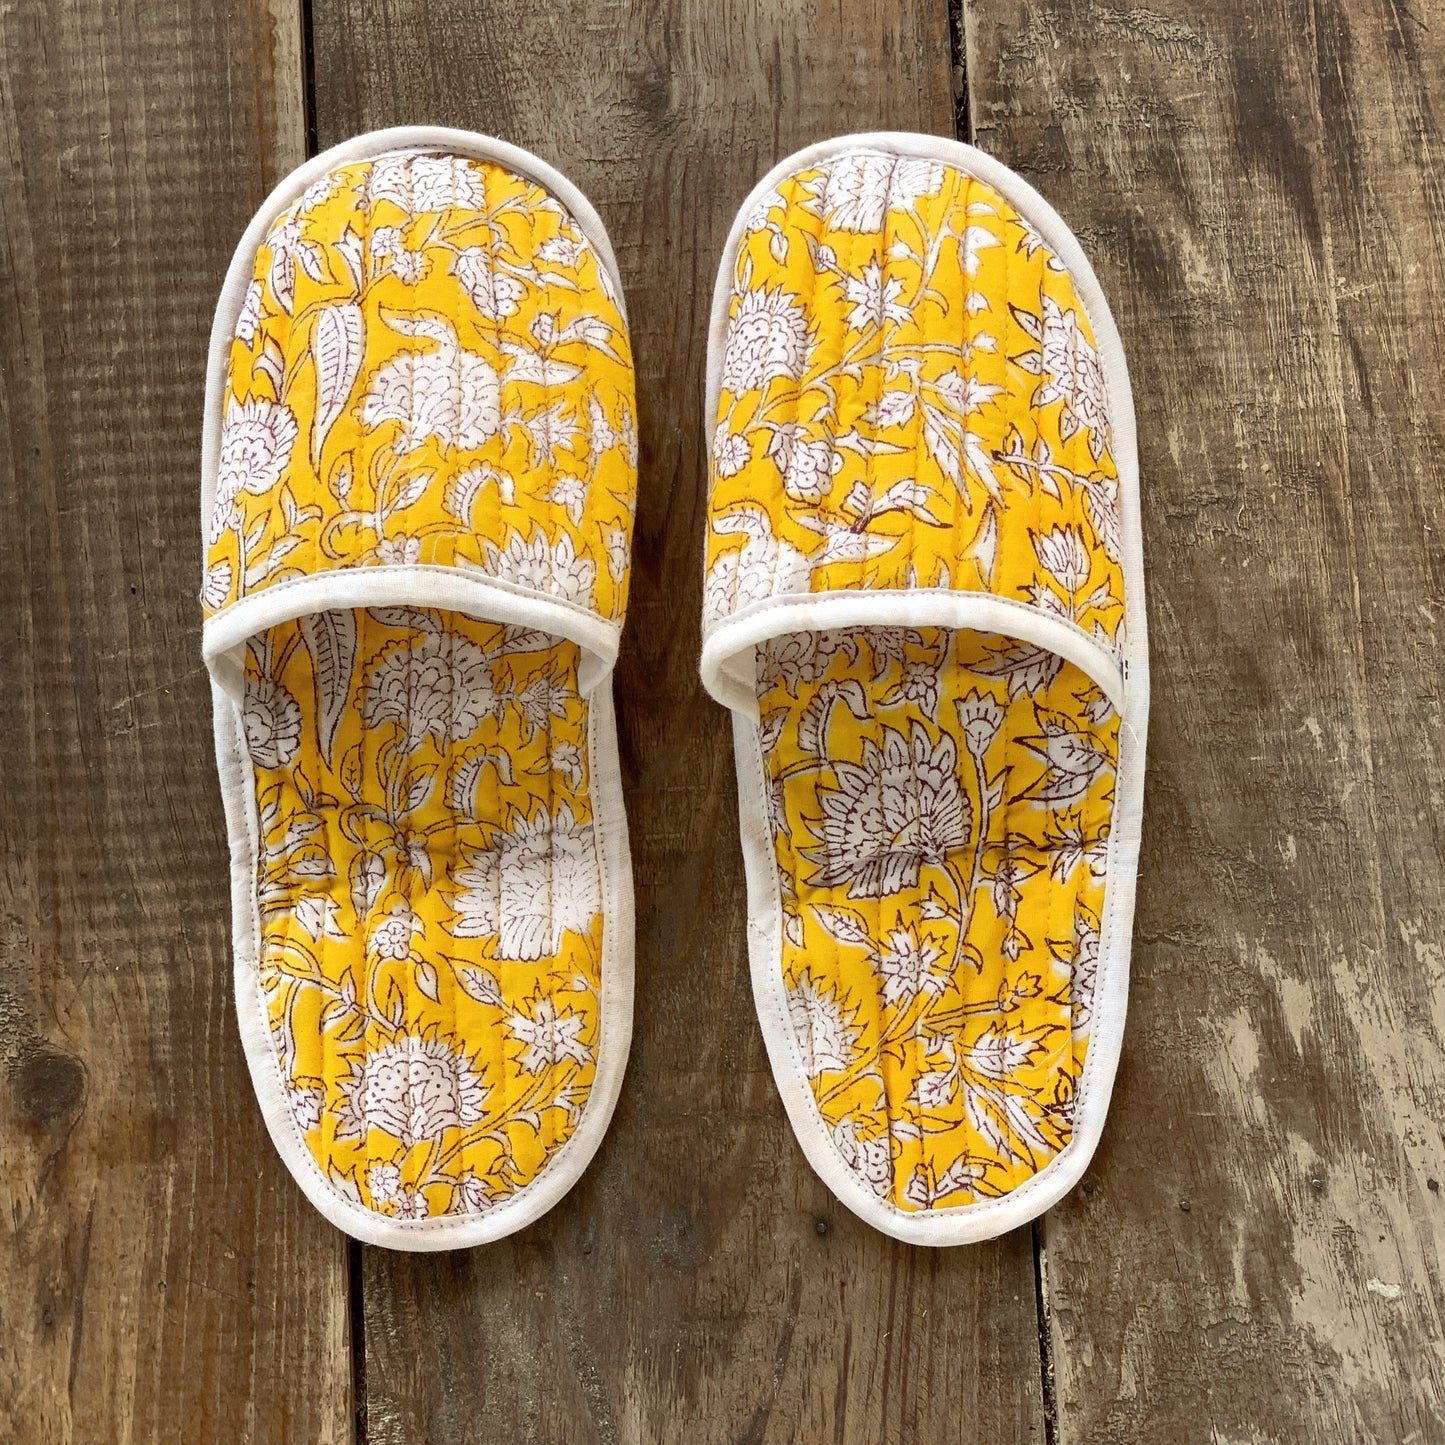 Zapatillas de viaje enguatadas con bolsa a juego · Algodón puro estampado block print en India · Zapatillas de baño ducha · Amarillo blanco